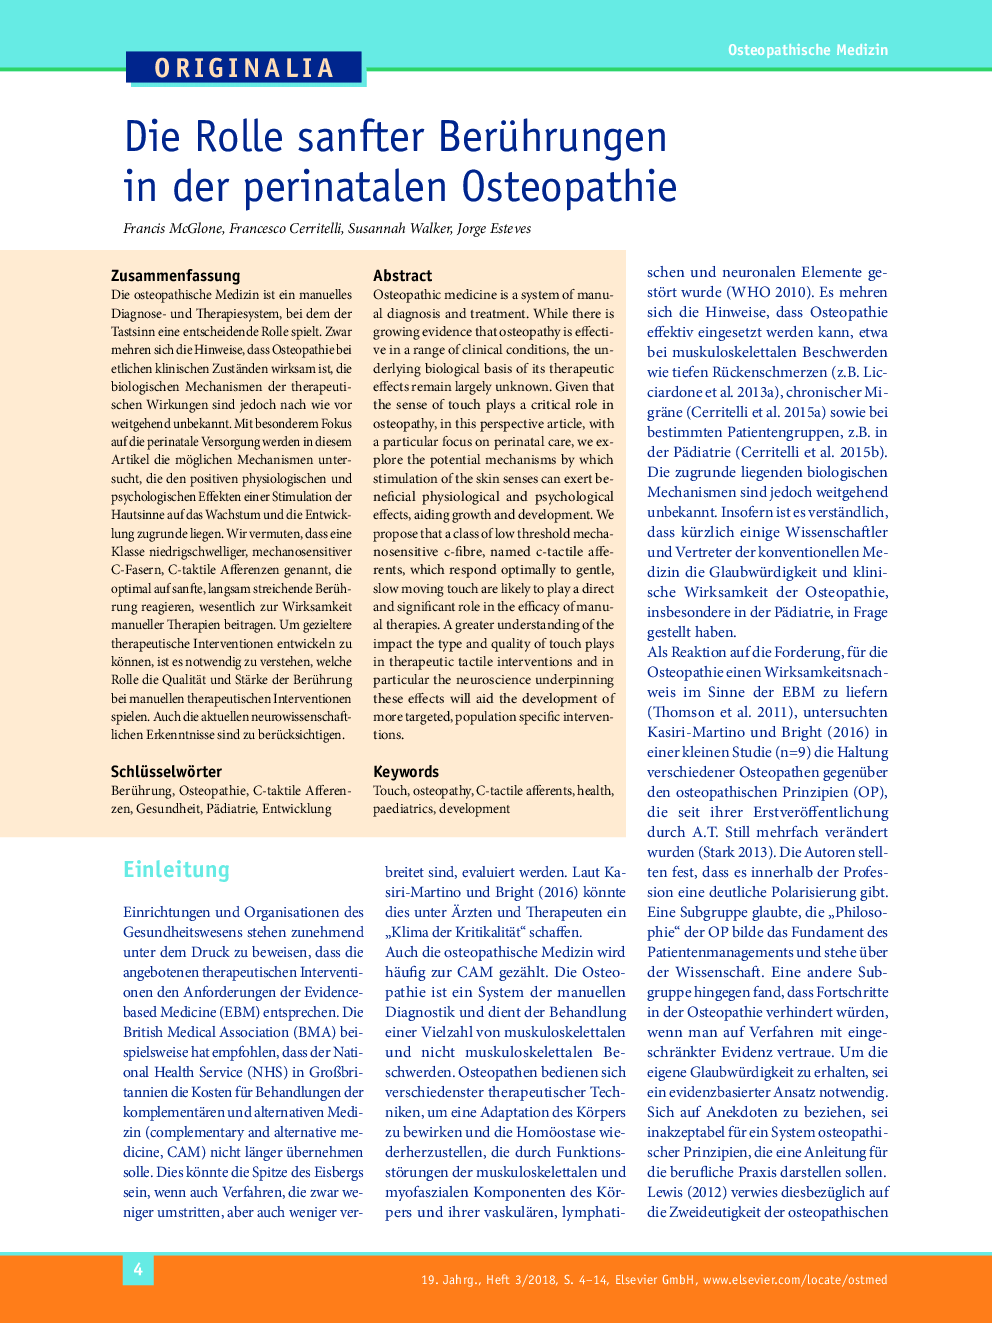 Die Rolle sanfter Berührungen in der perinatalen Osteopathie